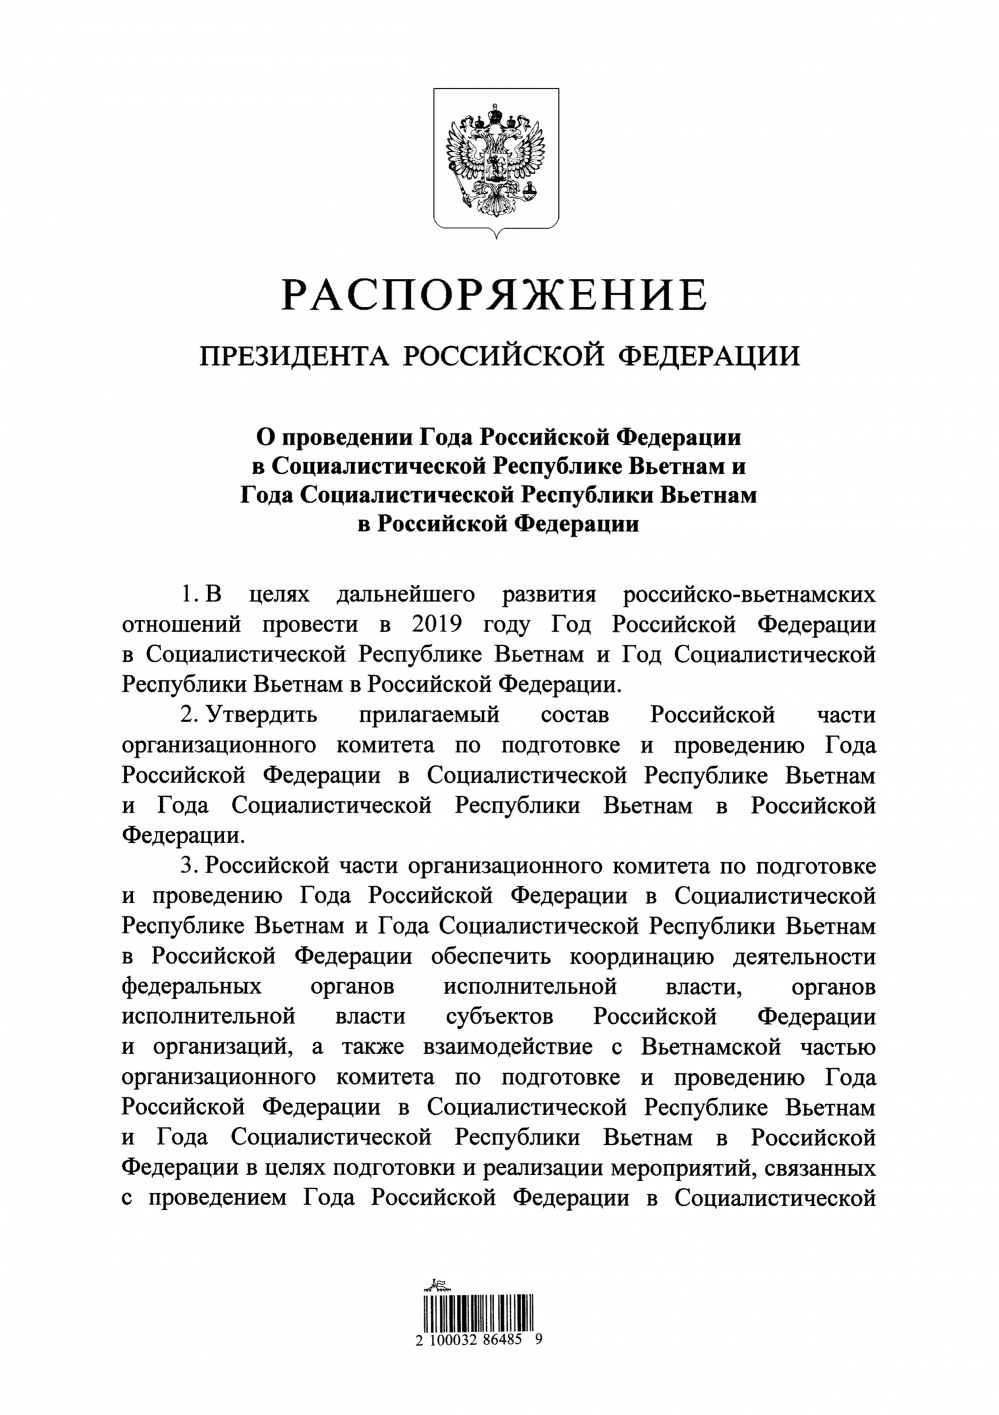 Trang 1 Chỉ thị của Tổng thống Nga (nguồn kremlin.ru)